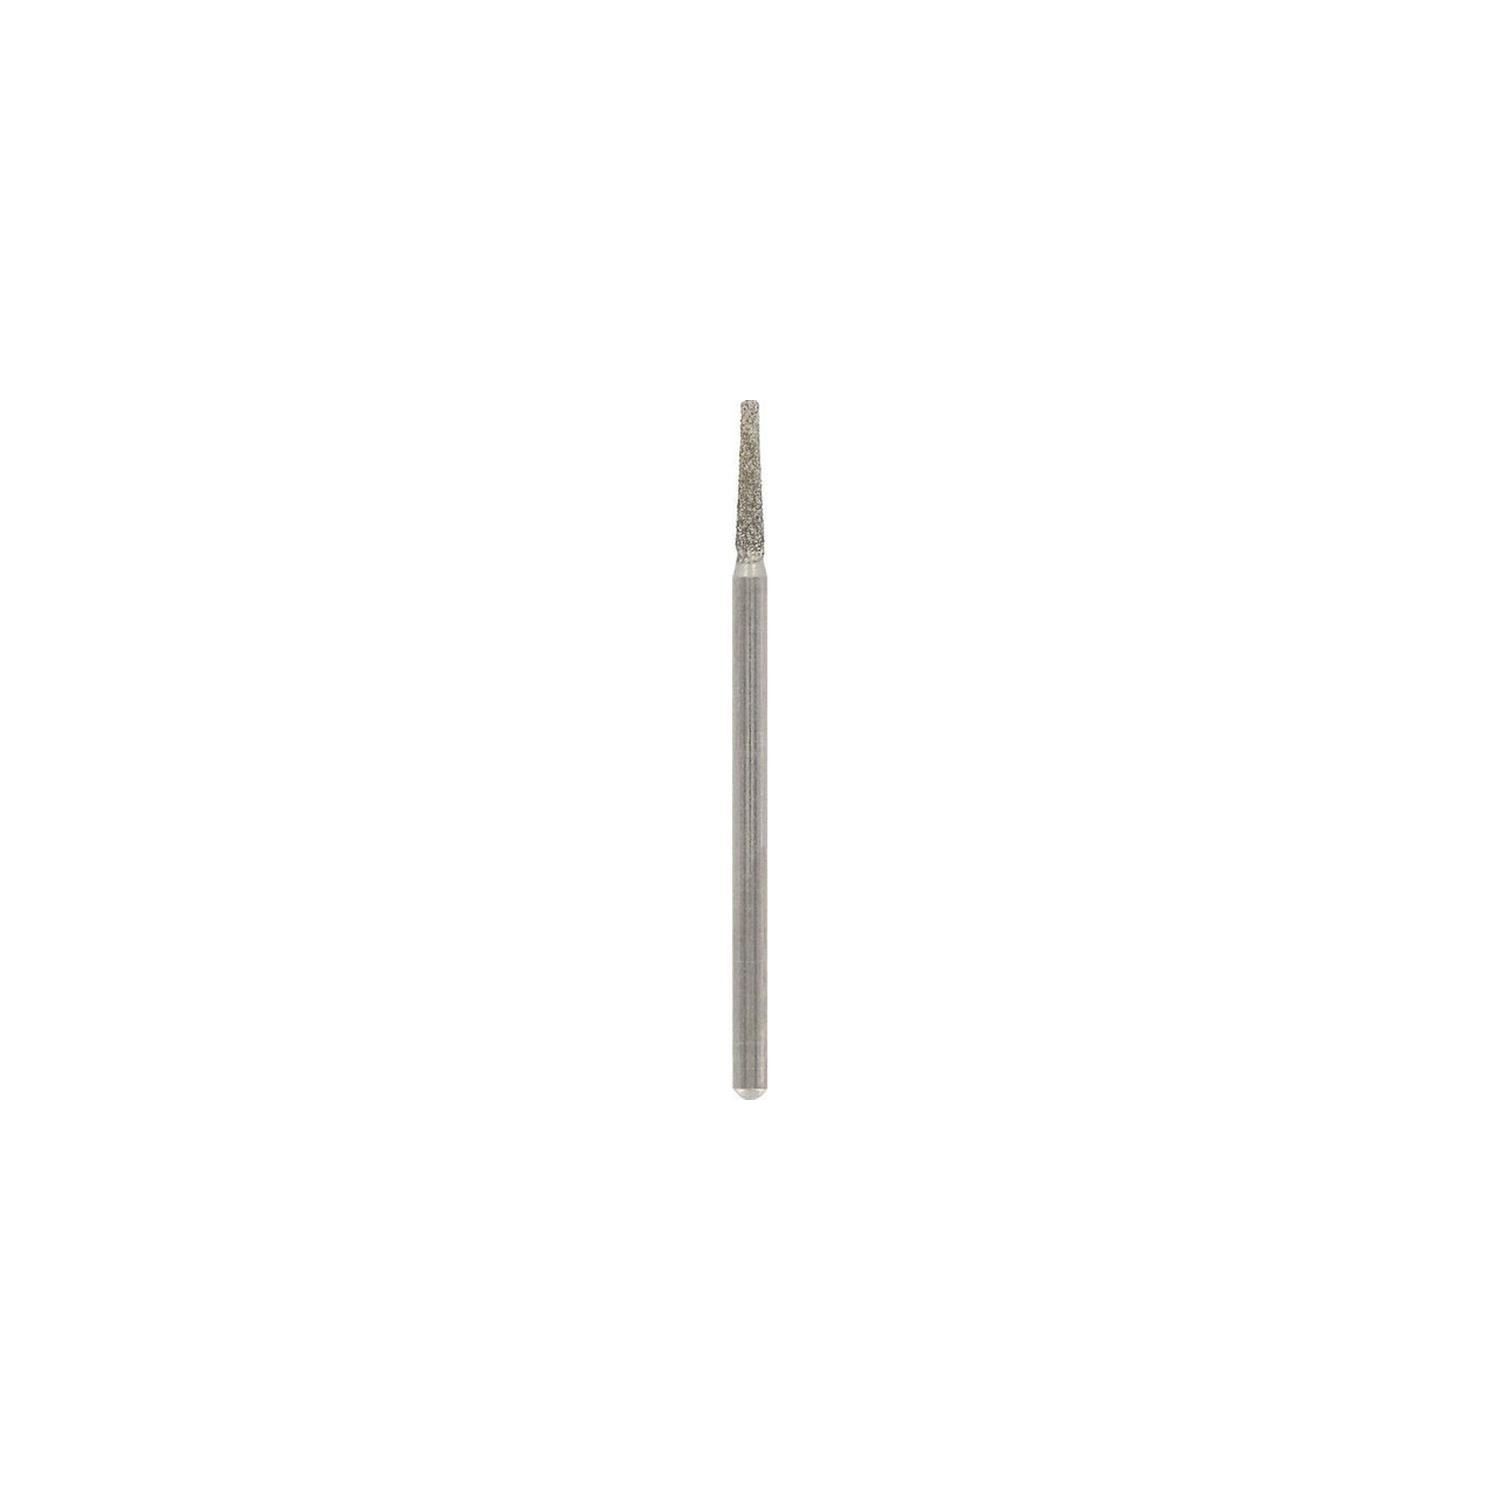 Pointe diamant Dremel 2,0 mm 7134 - Accessoires pour perforateurs